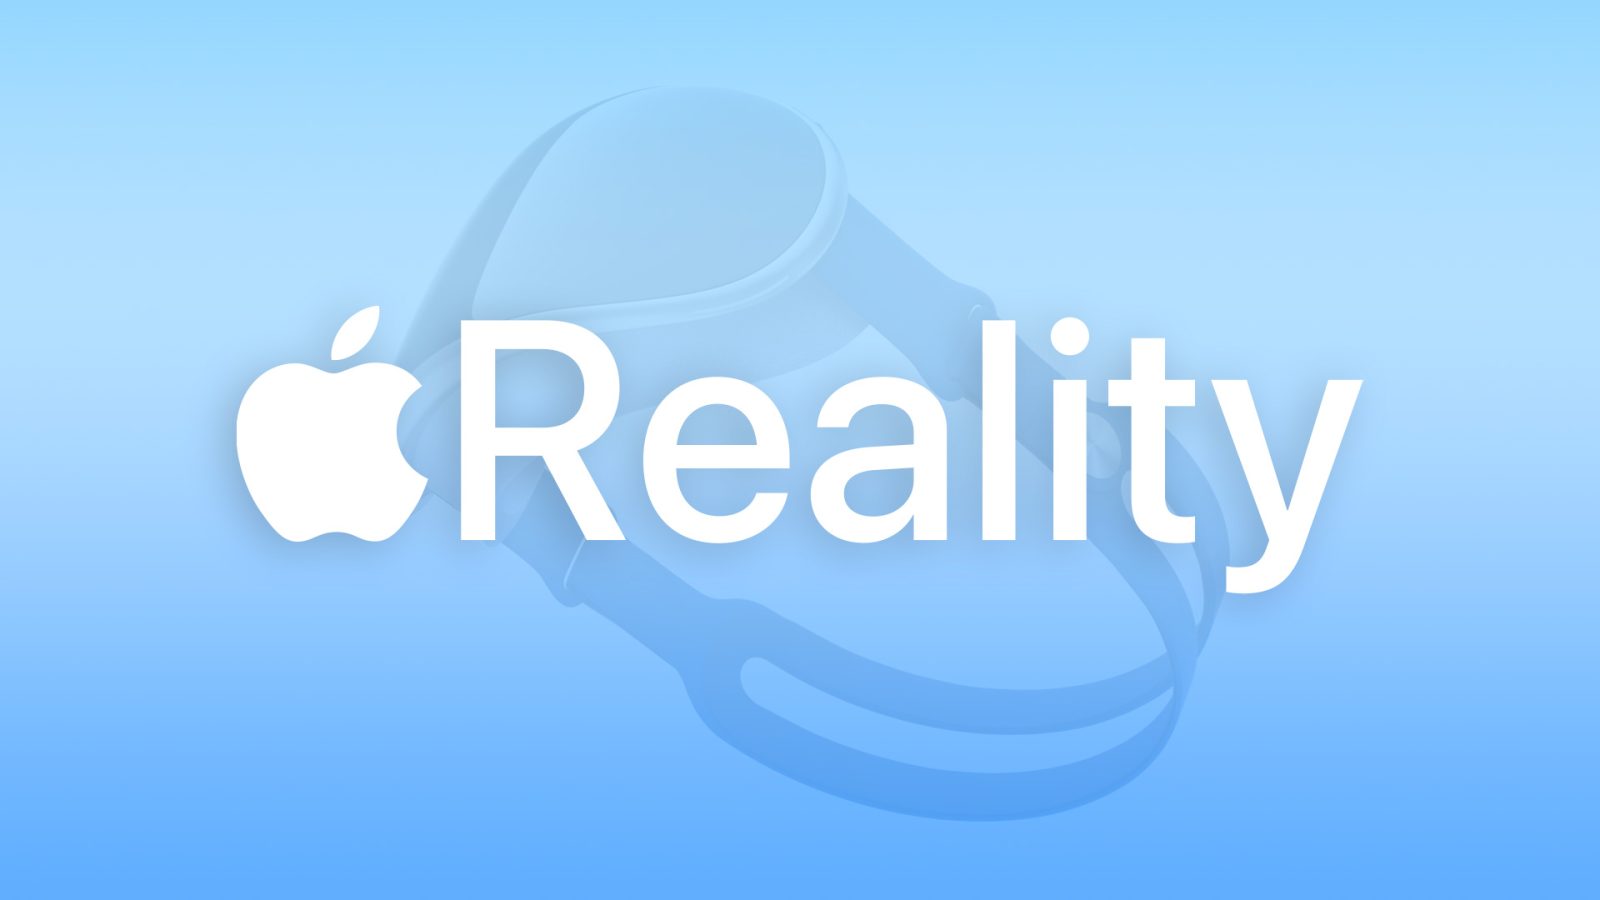 Новый словесный товарный знак «xrOS» зарегистрирован Apple в преддверии анонса гарнитуры AR / VR